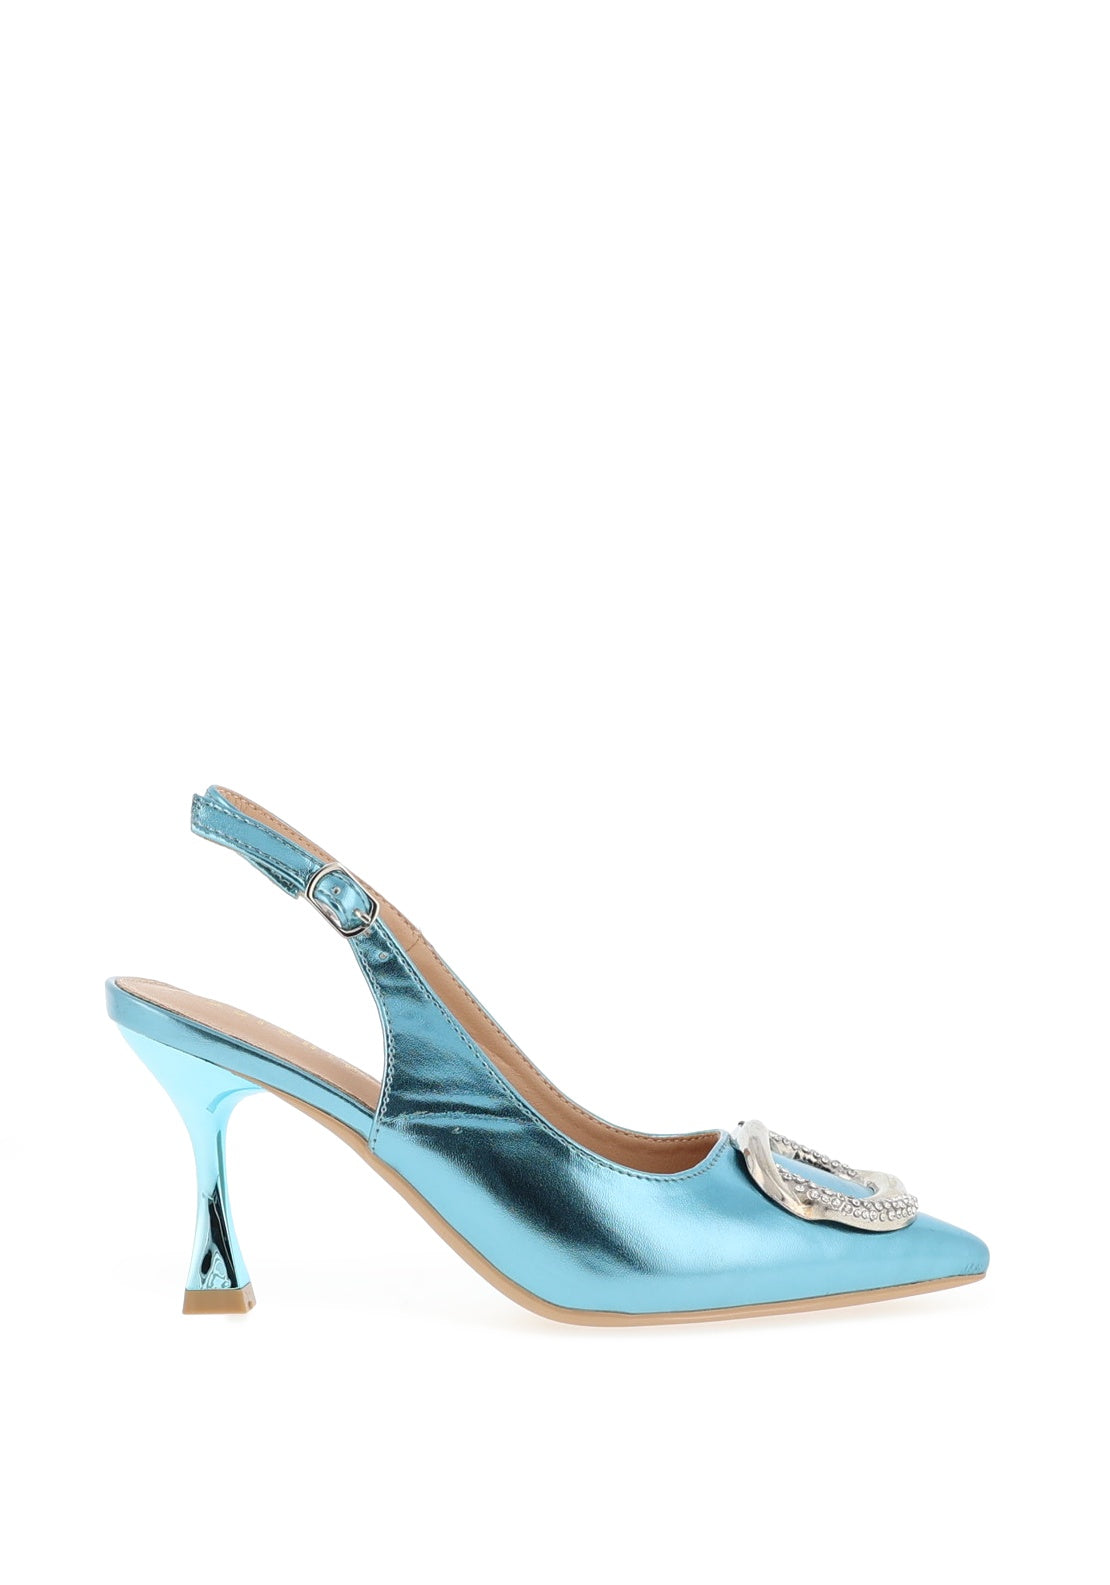 Sorento Ellingham Embellished Sling Back Heeled Shoes, Blue - McElhinneys